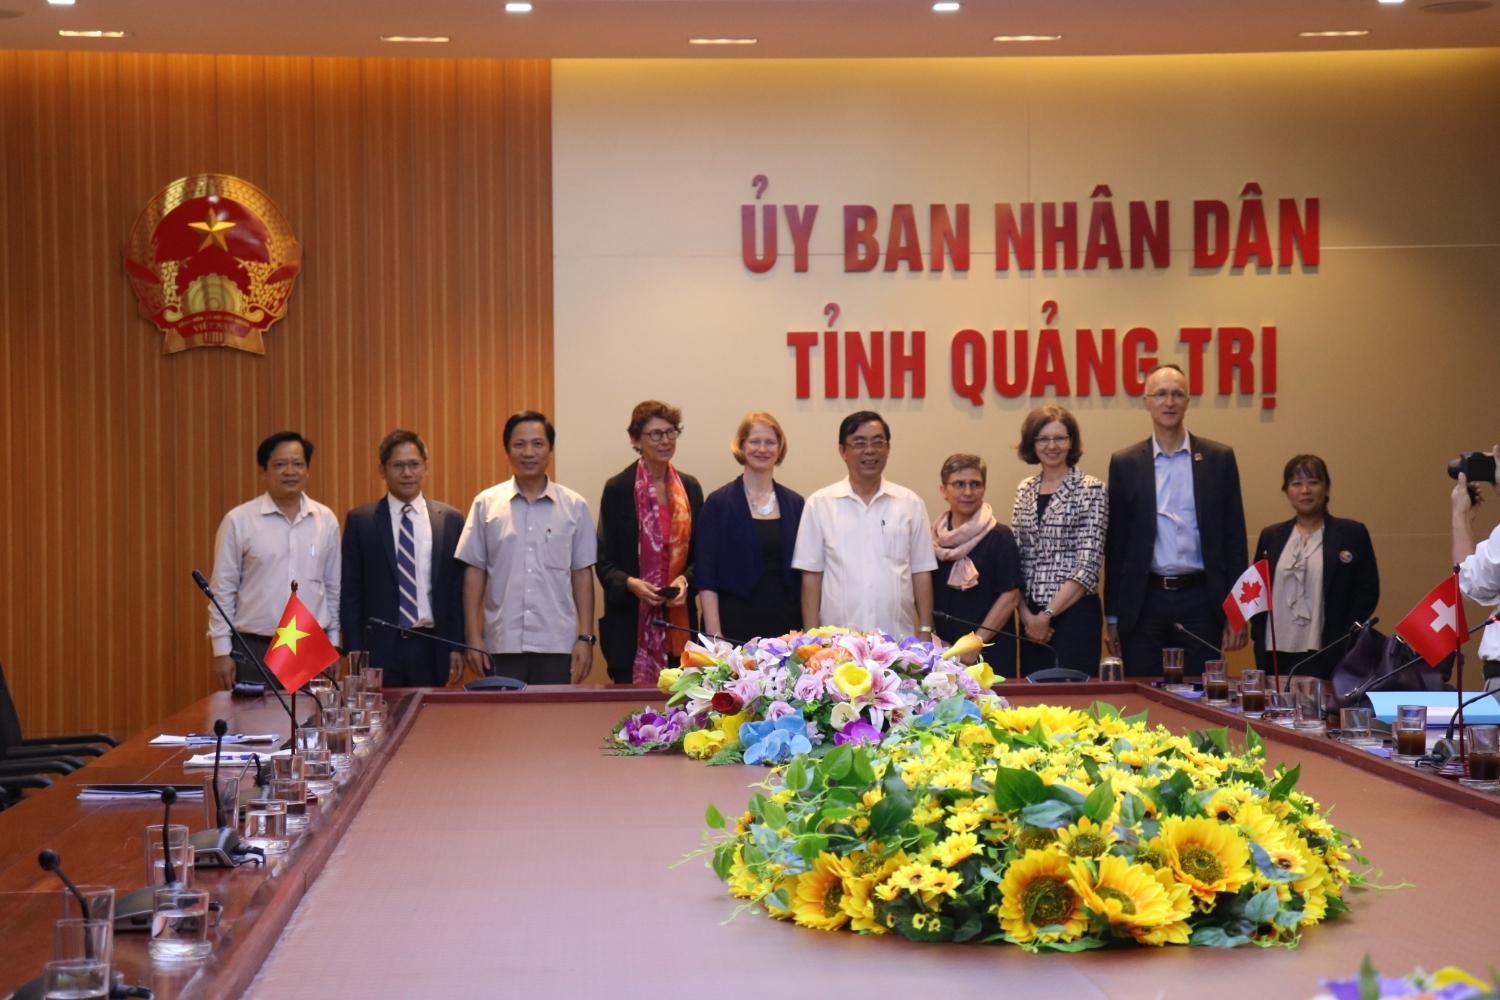 Chủ tịch UBND tỉnh Quảng Trị Nguyễn Đức Chính tiếp đoàn Đại sứ các nước nhóm G4